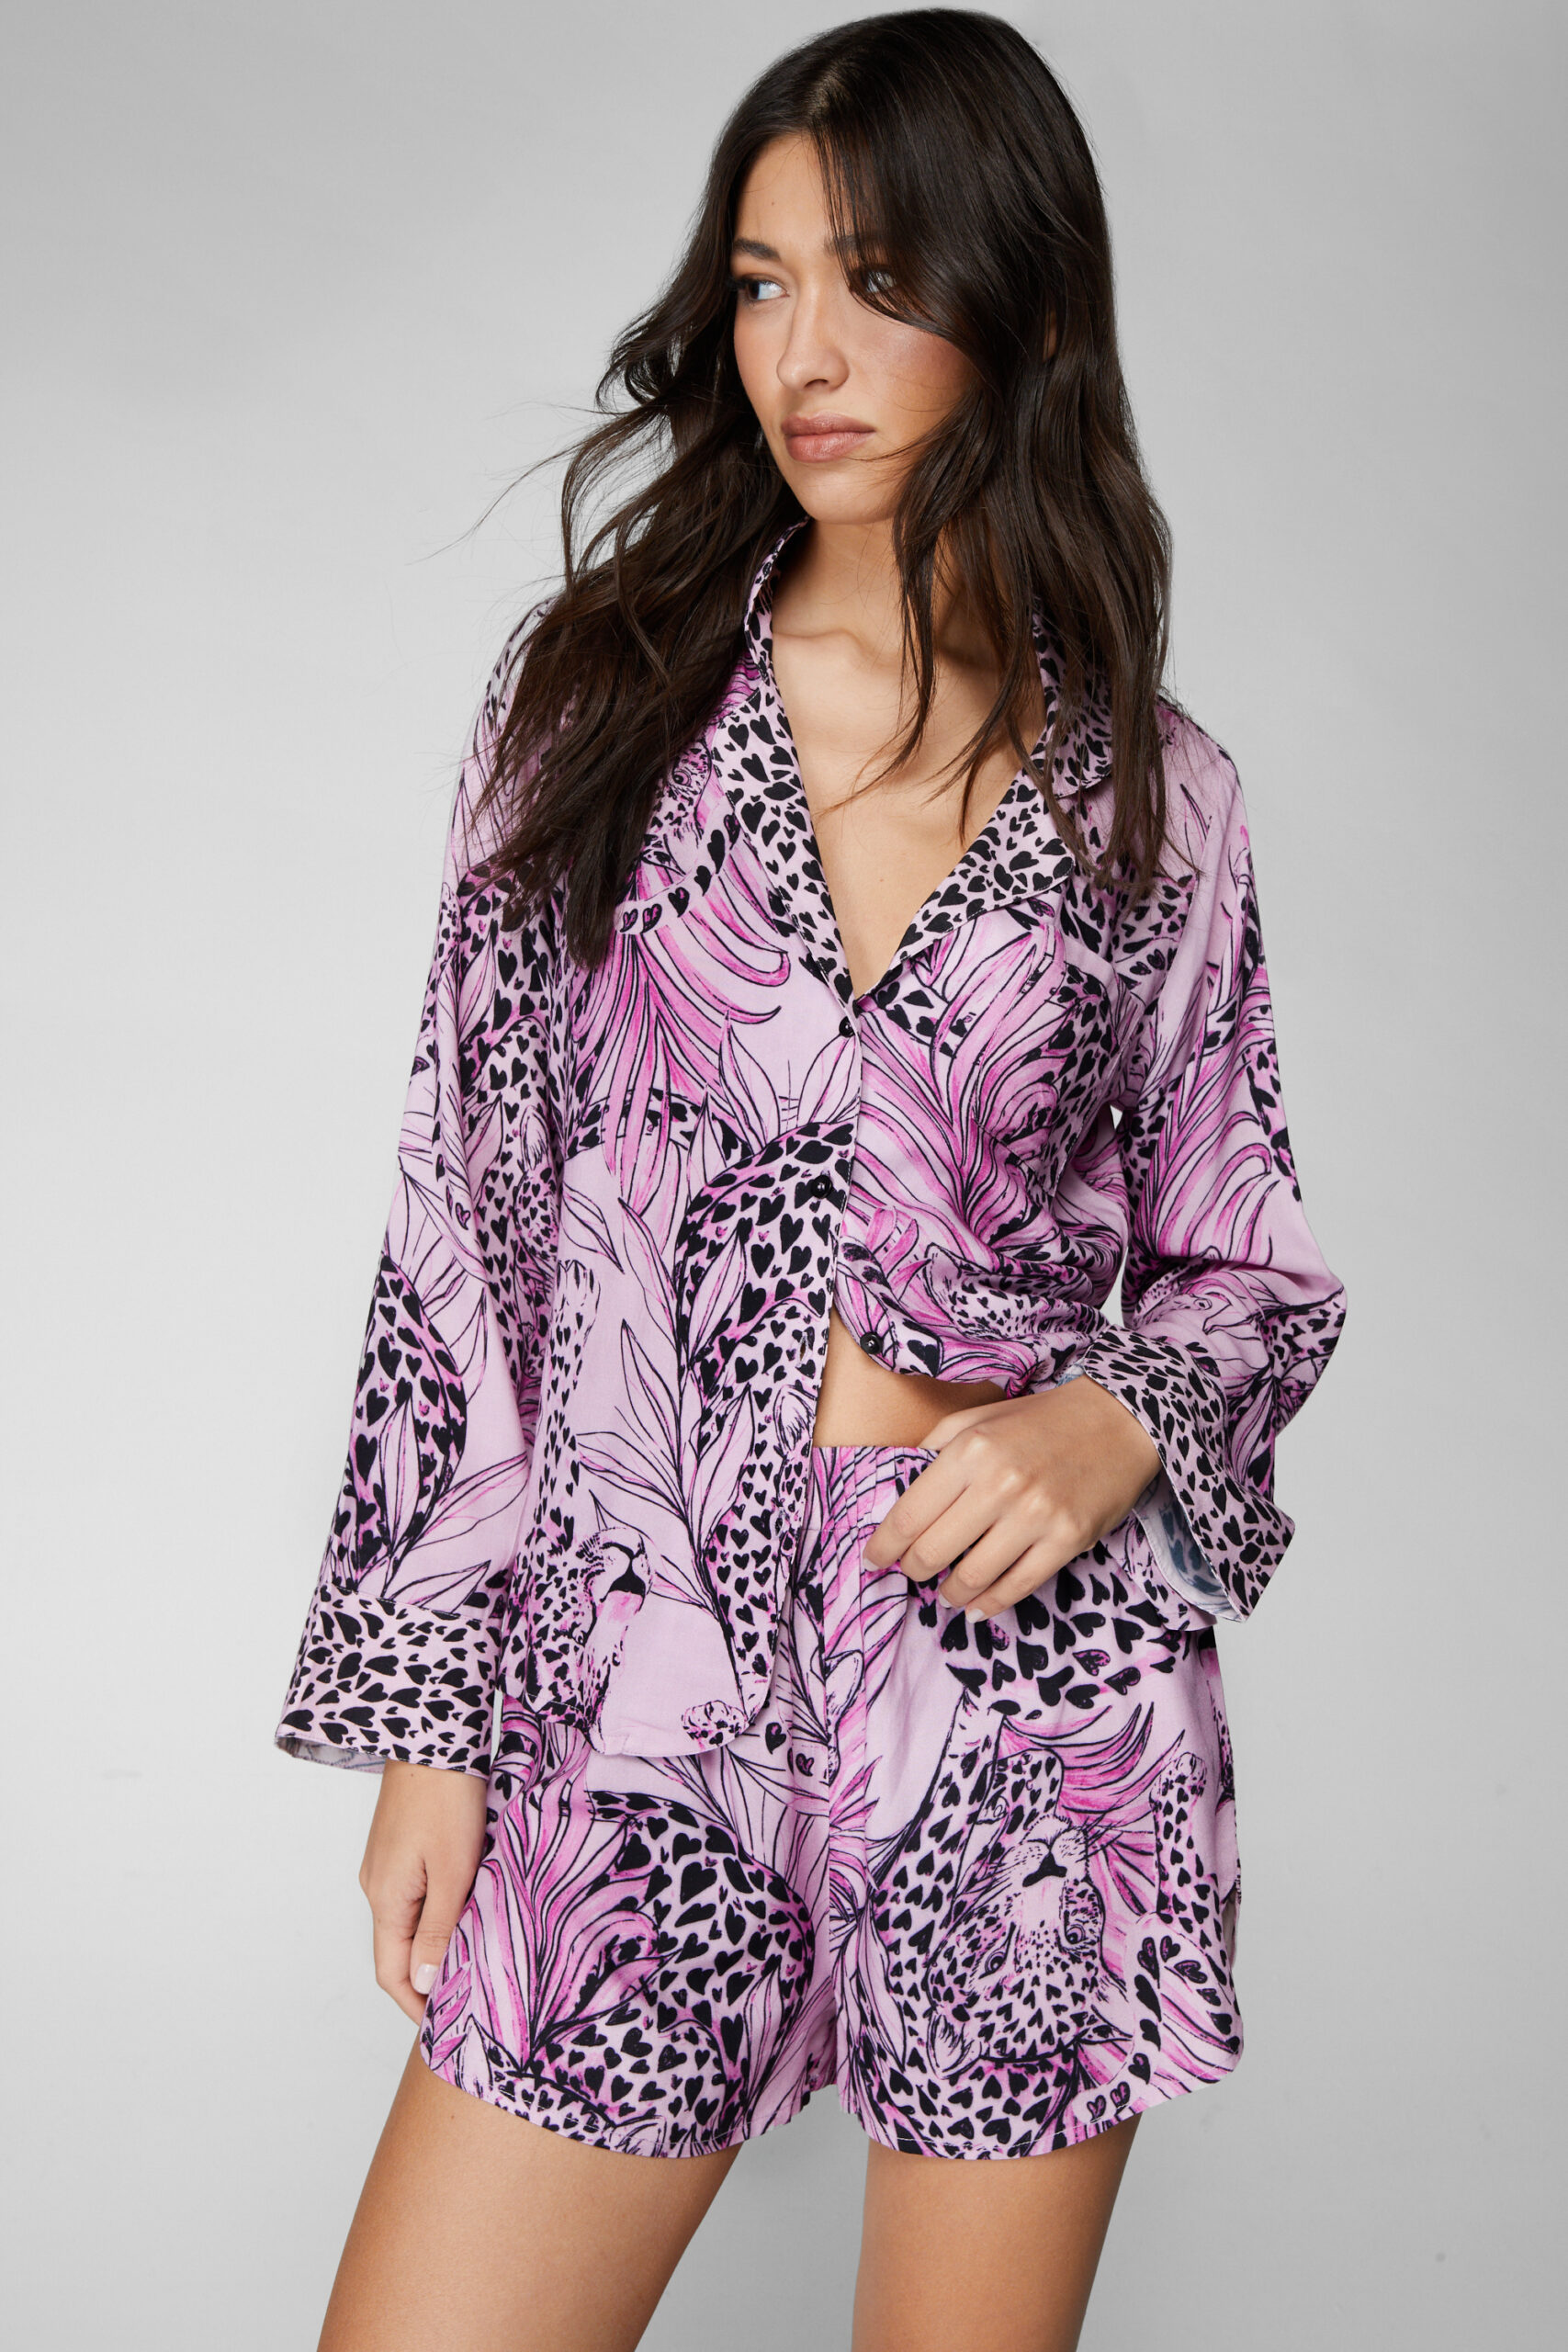 Viscose Cheetah Border Print Pajama Shorts Set